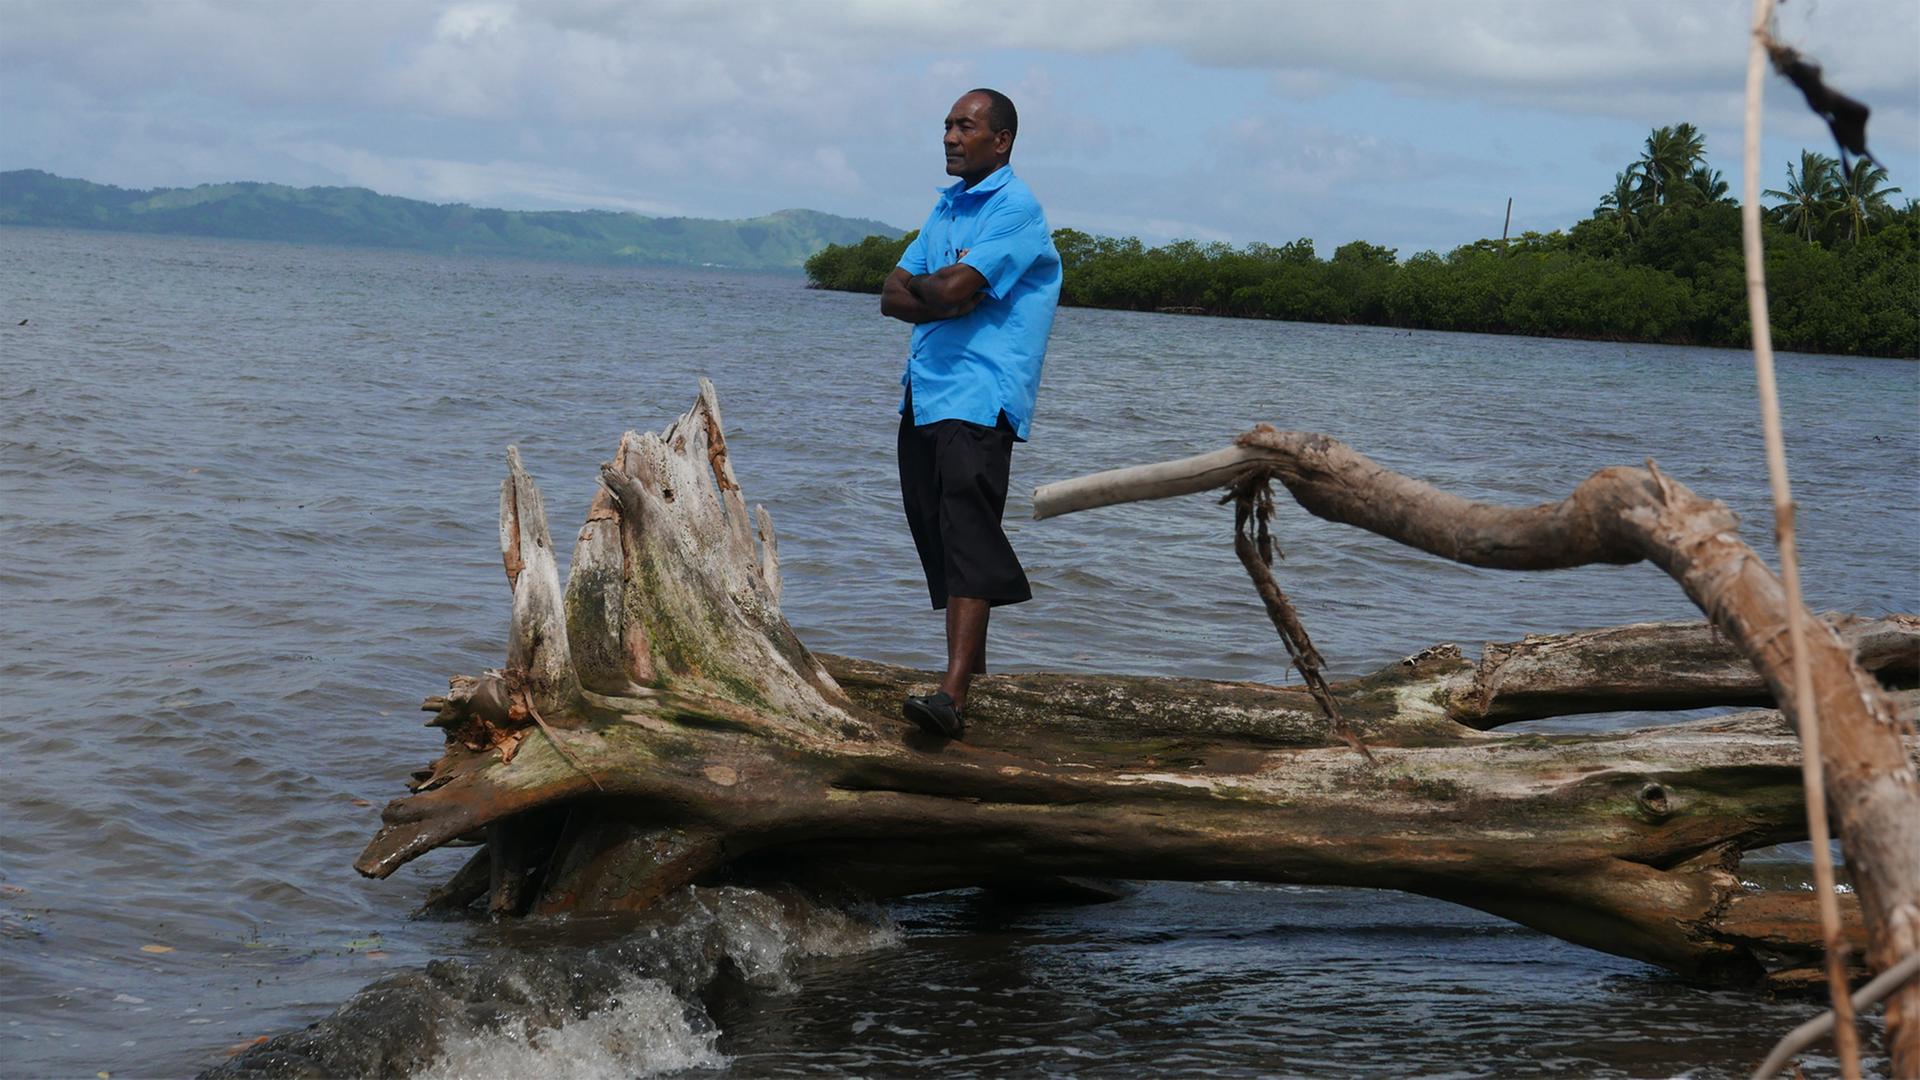 Sailosi Ramatu, Oberhaupt des Dorfs Vunidogoloa auf den Fidschi-Inseln, steht auf einem umgefallenen Baum am Strand.